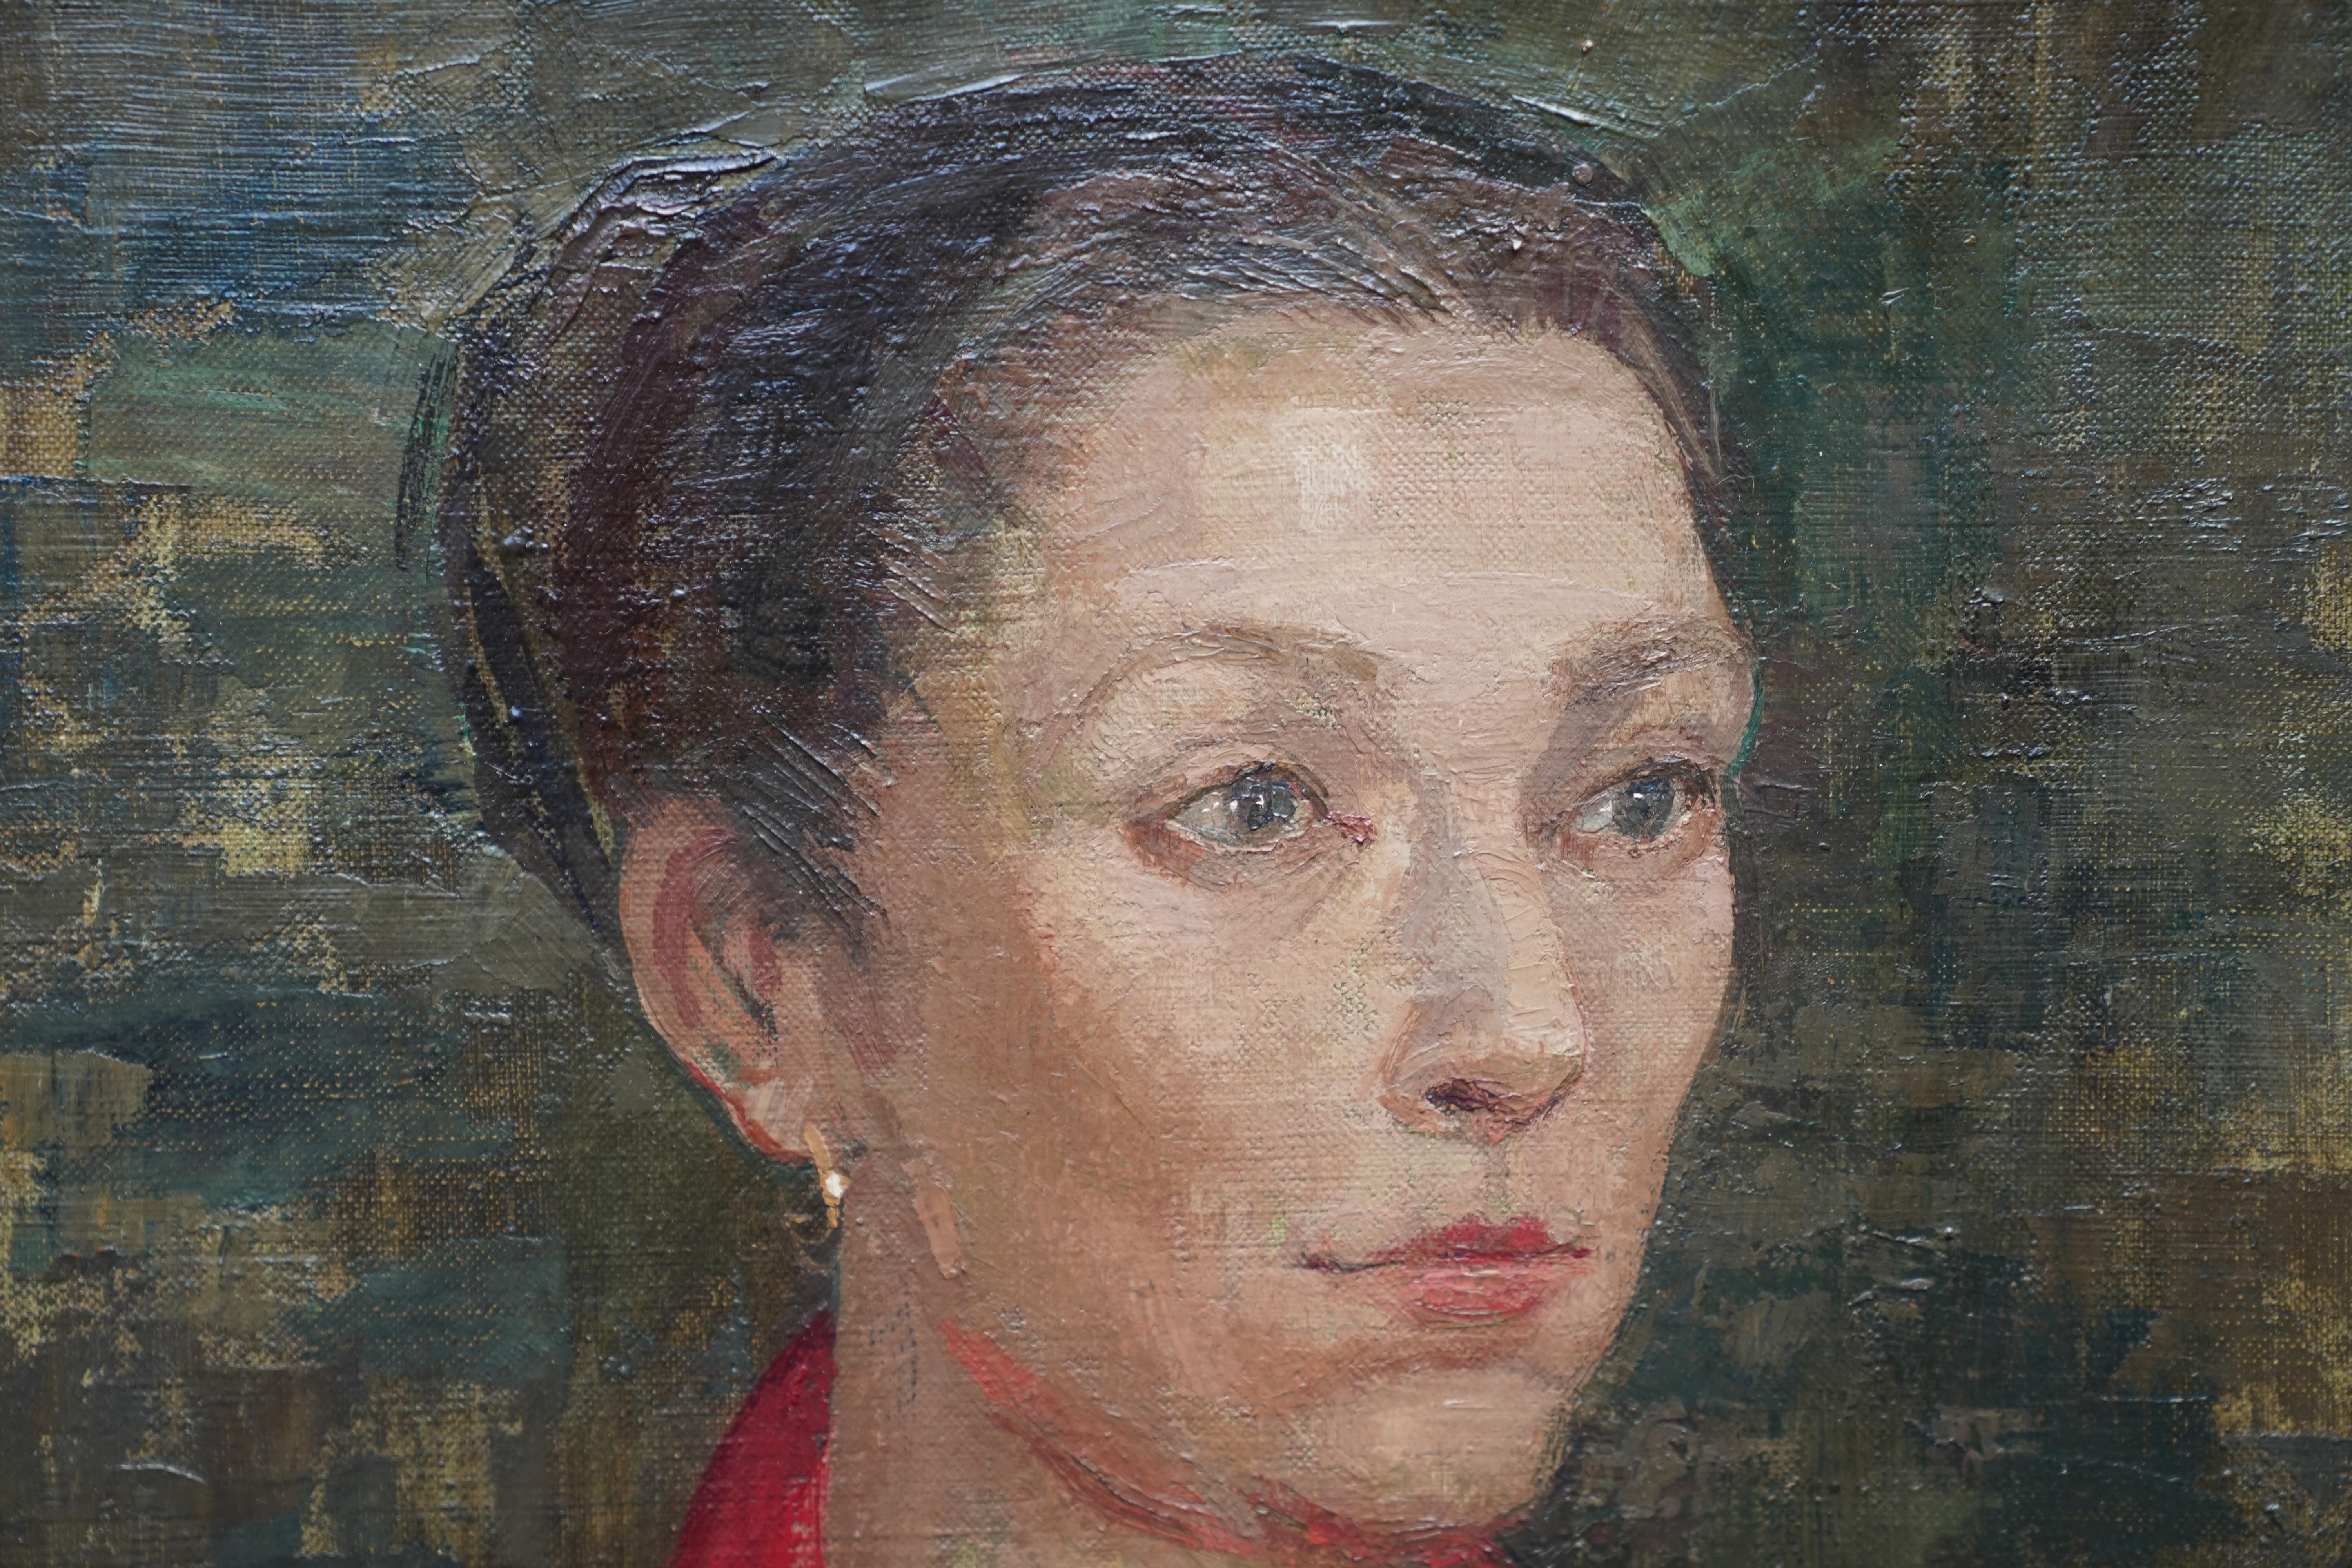 Superbe portrait britannique à l'huile dans les tons de rouge, datant de 1955.  Un portrait de femme d'époque très évocateur, peint par l'artiste britannique Constance Anne Parker. Artistics très apprécié, son style évoque les années 1950 et doit